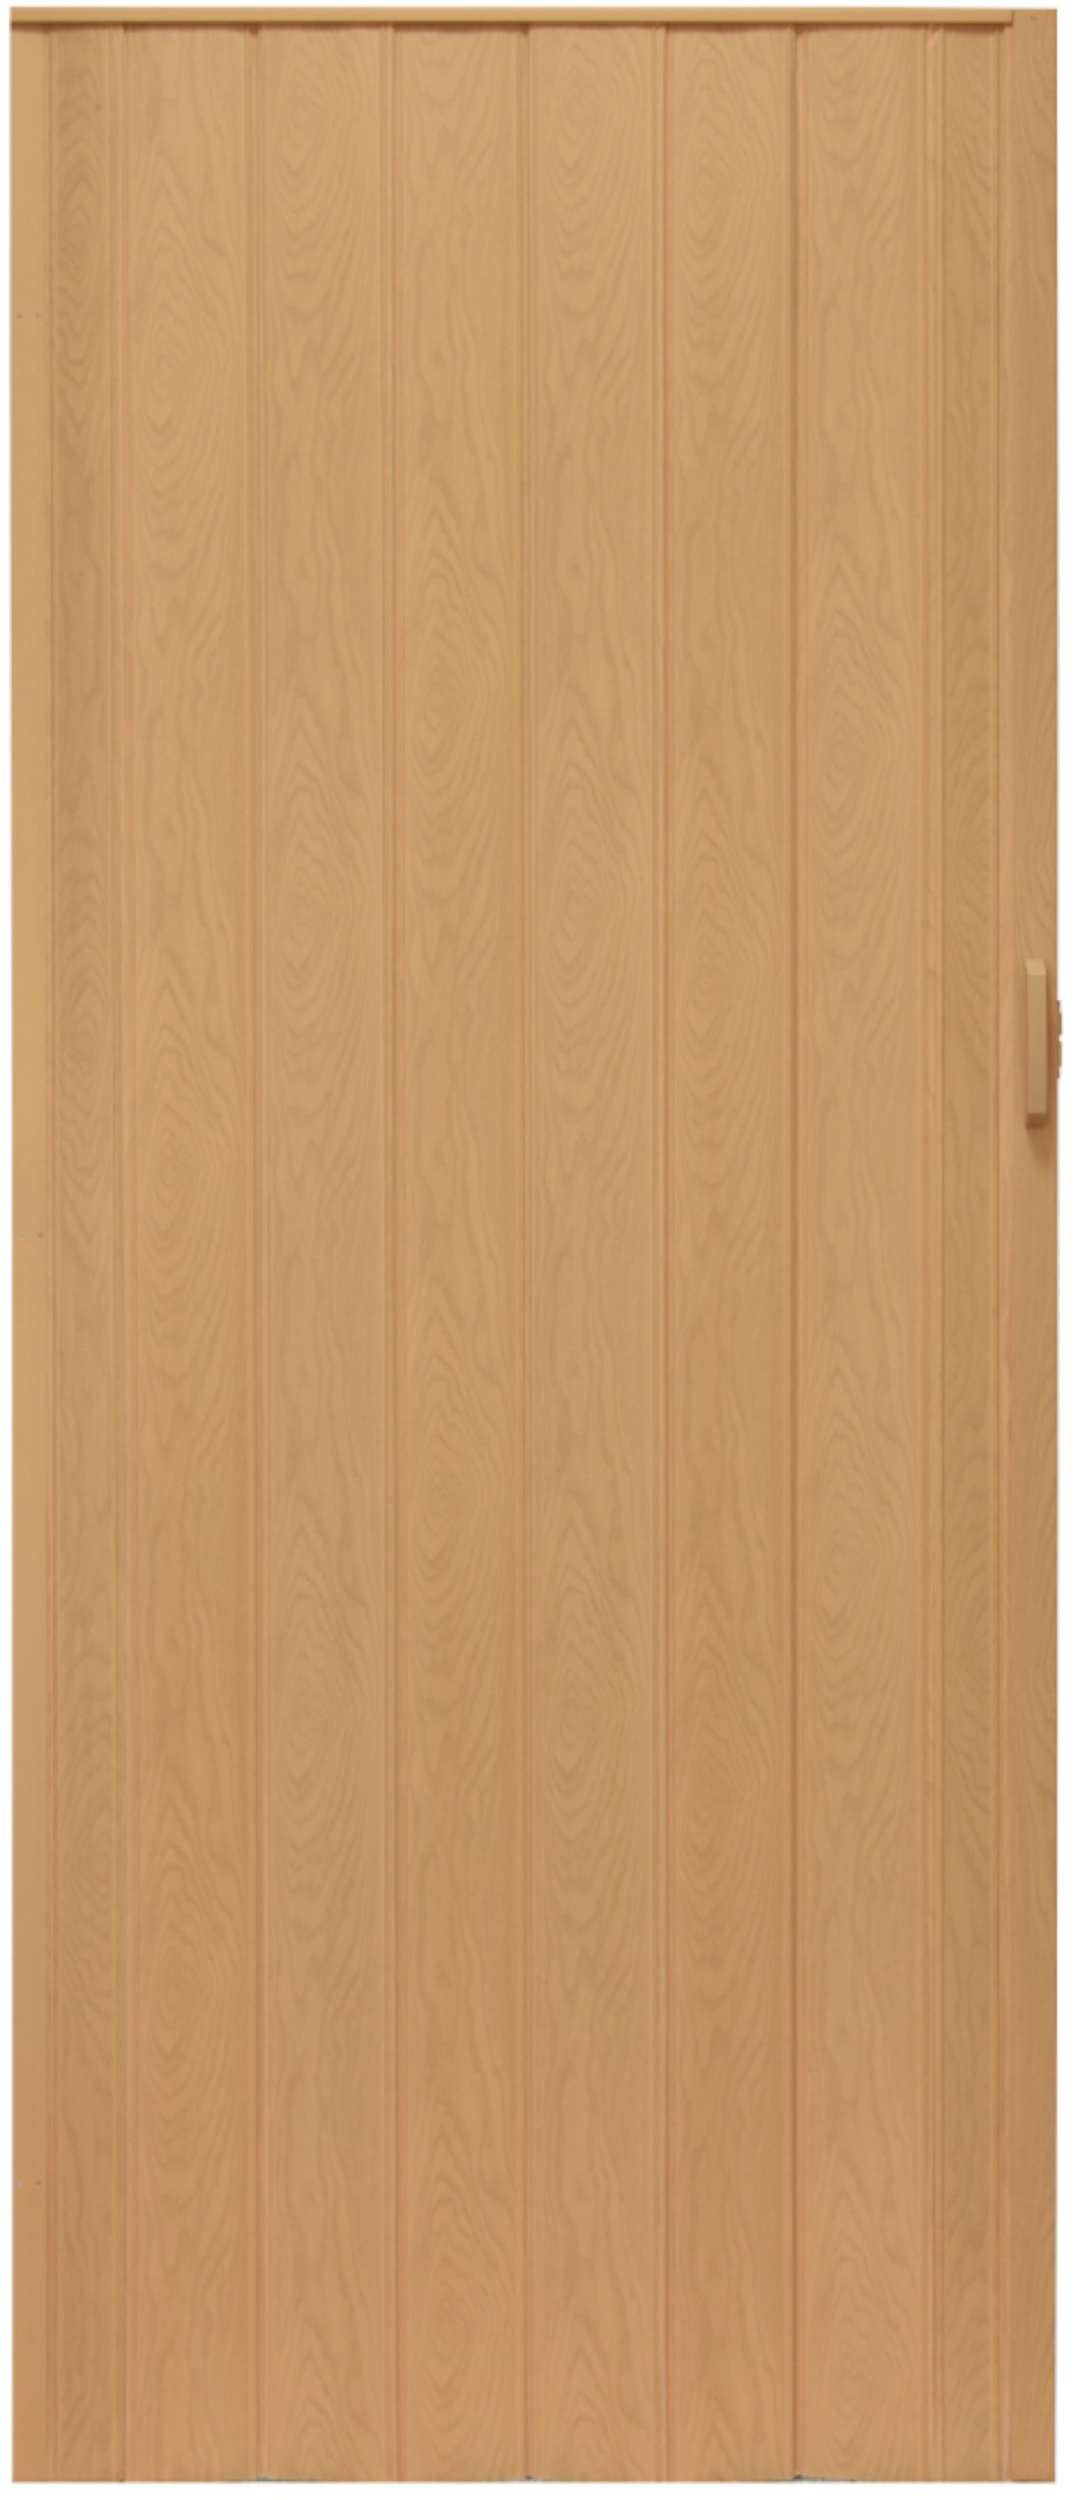 Drzwi harmonijkowe 004-02-100 jasny dąb 100 cm